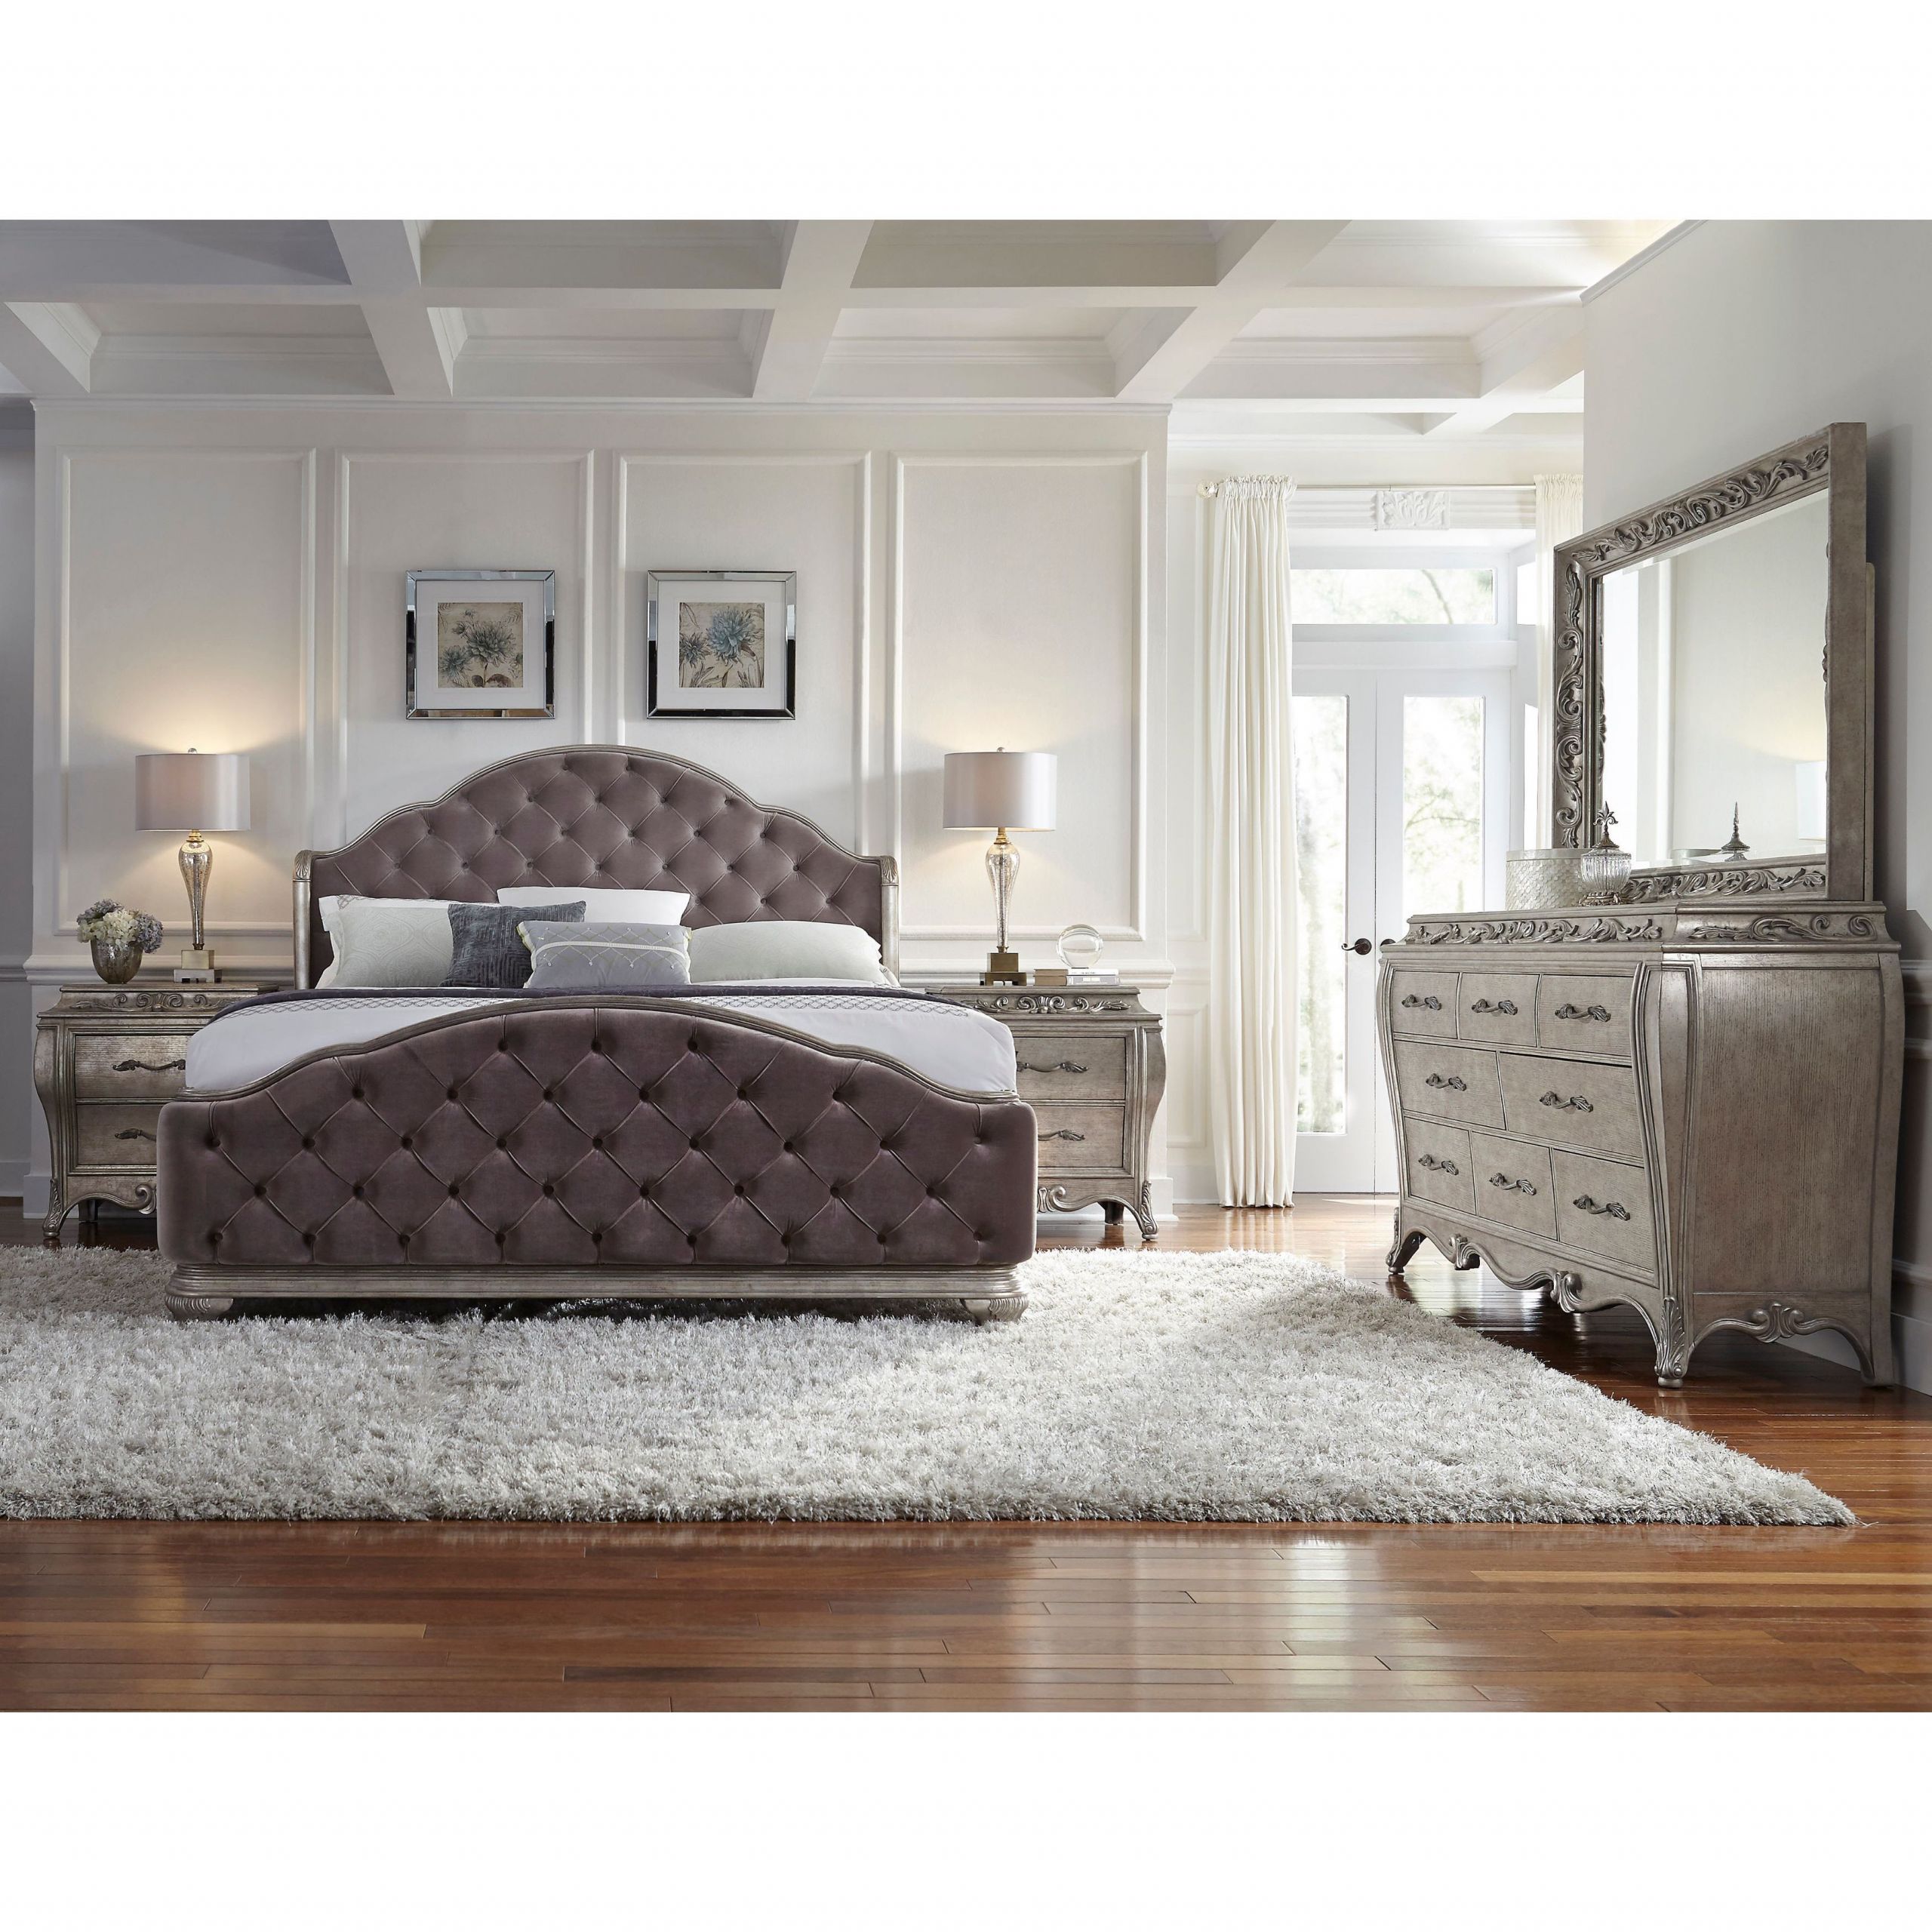 King Size Master Bedroom Sets
 Anastasia 5 piece King size Bedroom Set